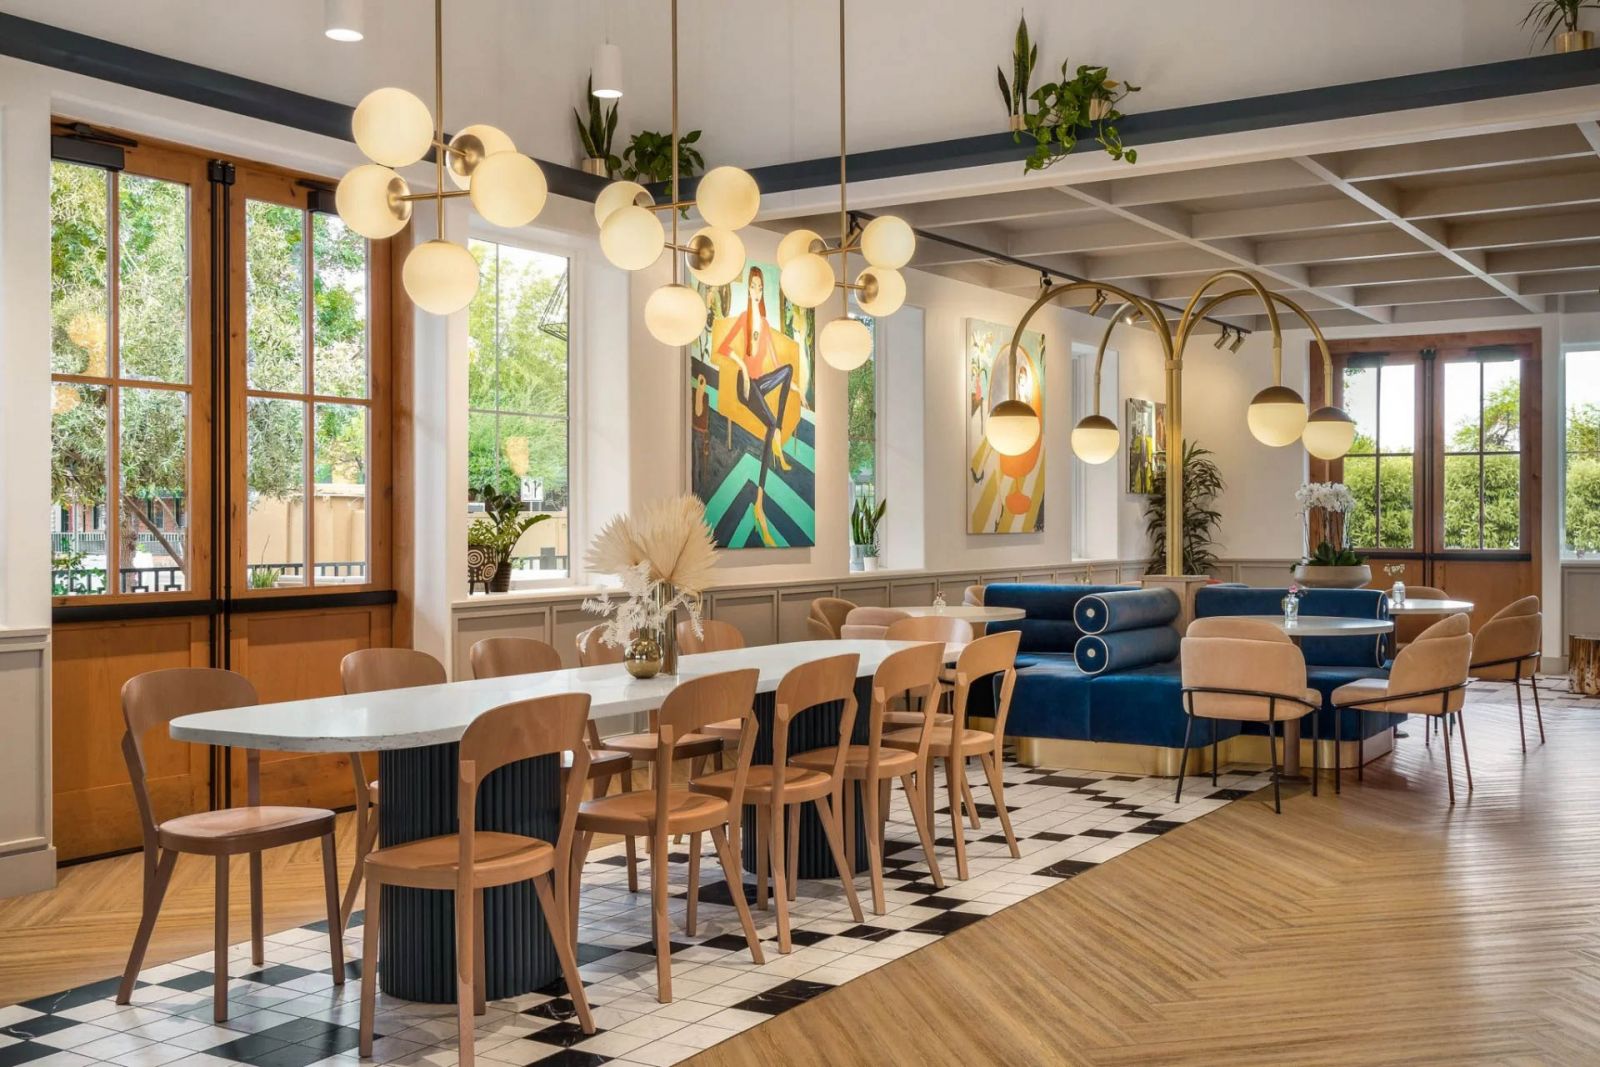 Đèn Trang Trí Cho Quán Cafe: Phong Cách Mid-Century Modern